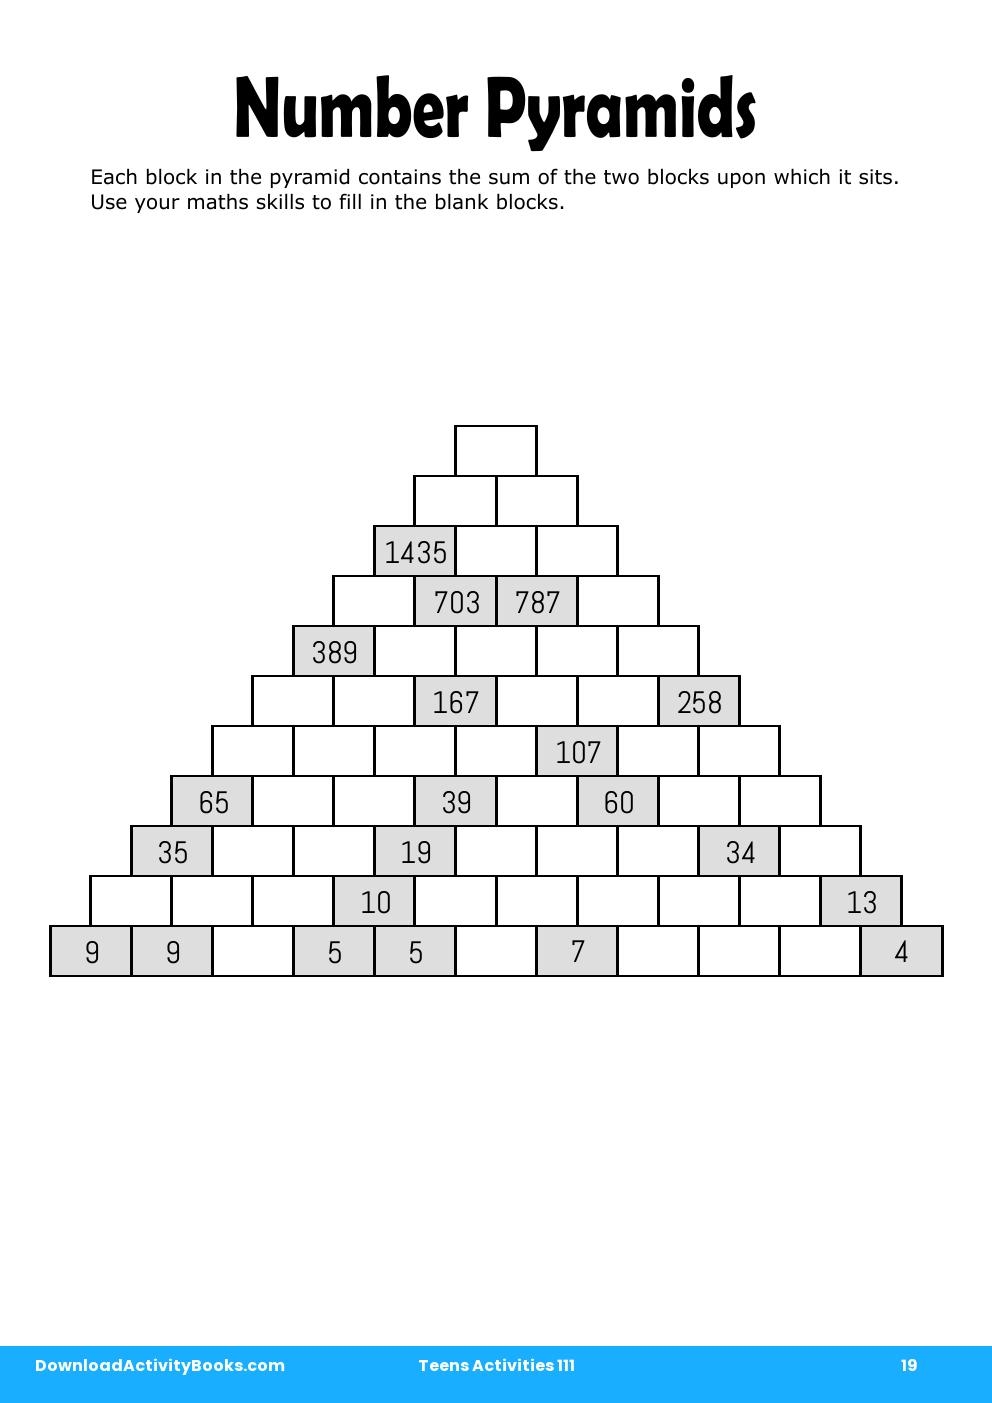 Number Pyramids in Teens Activities 111